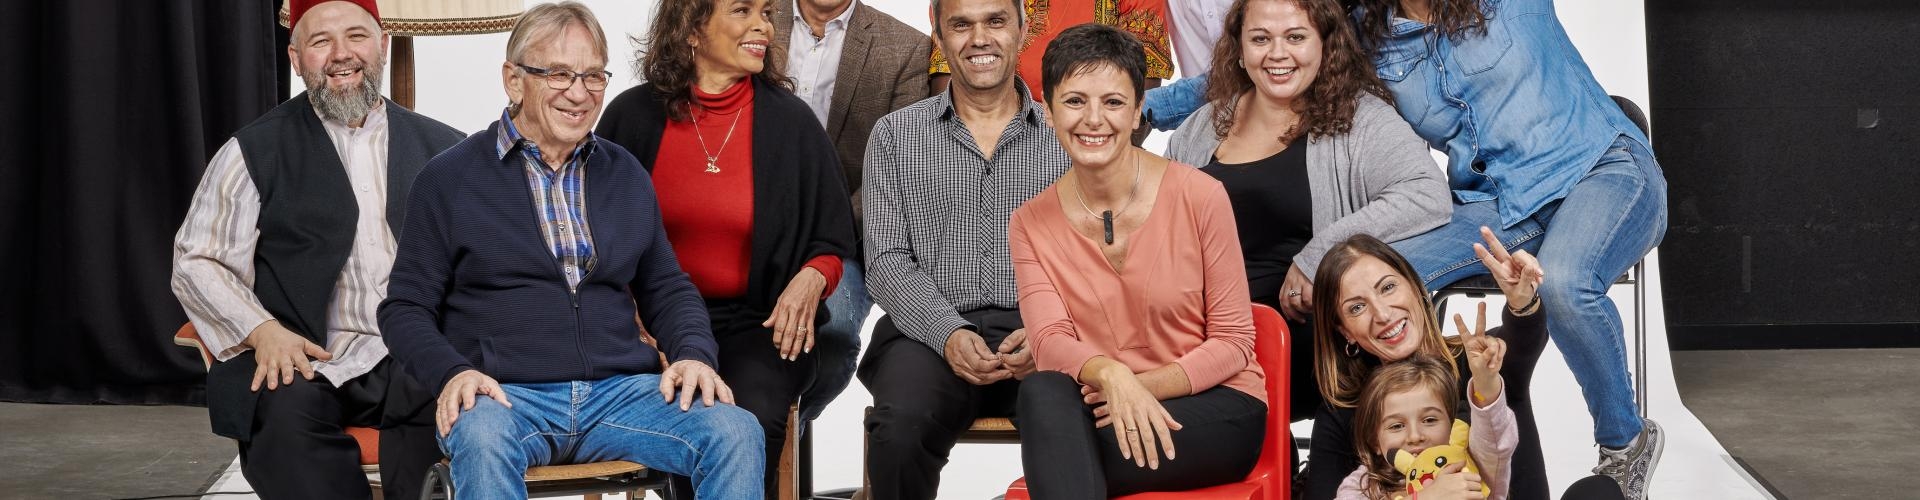 Fröhliche multikulturelle Gruppe posiert in einem Fotostudio vor einer weißen Leinwand